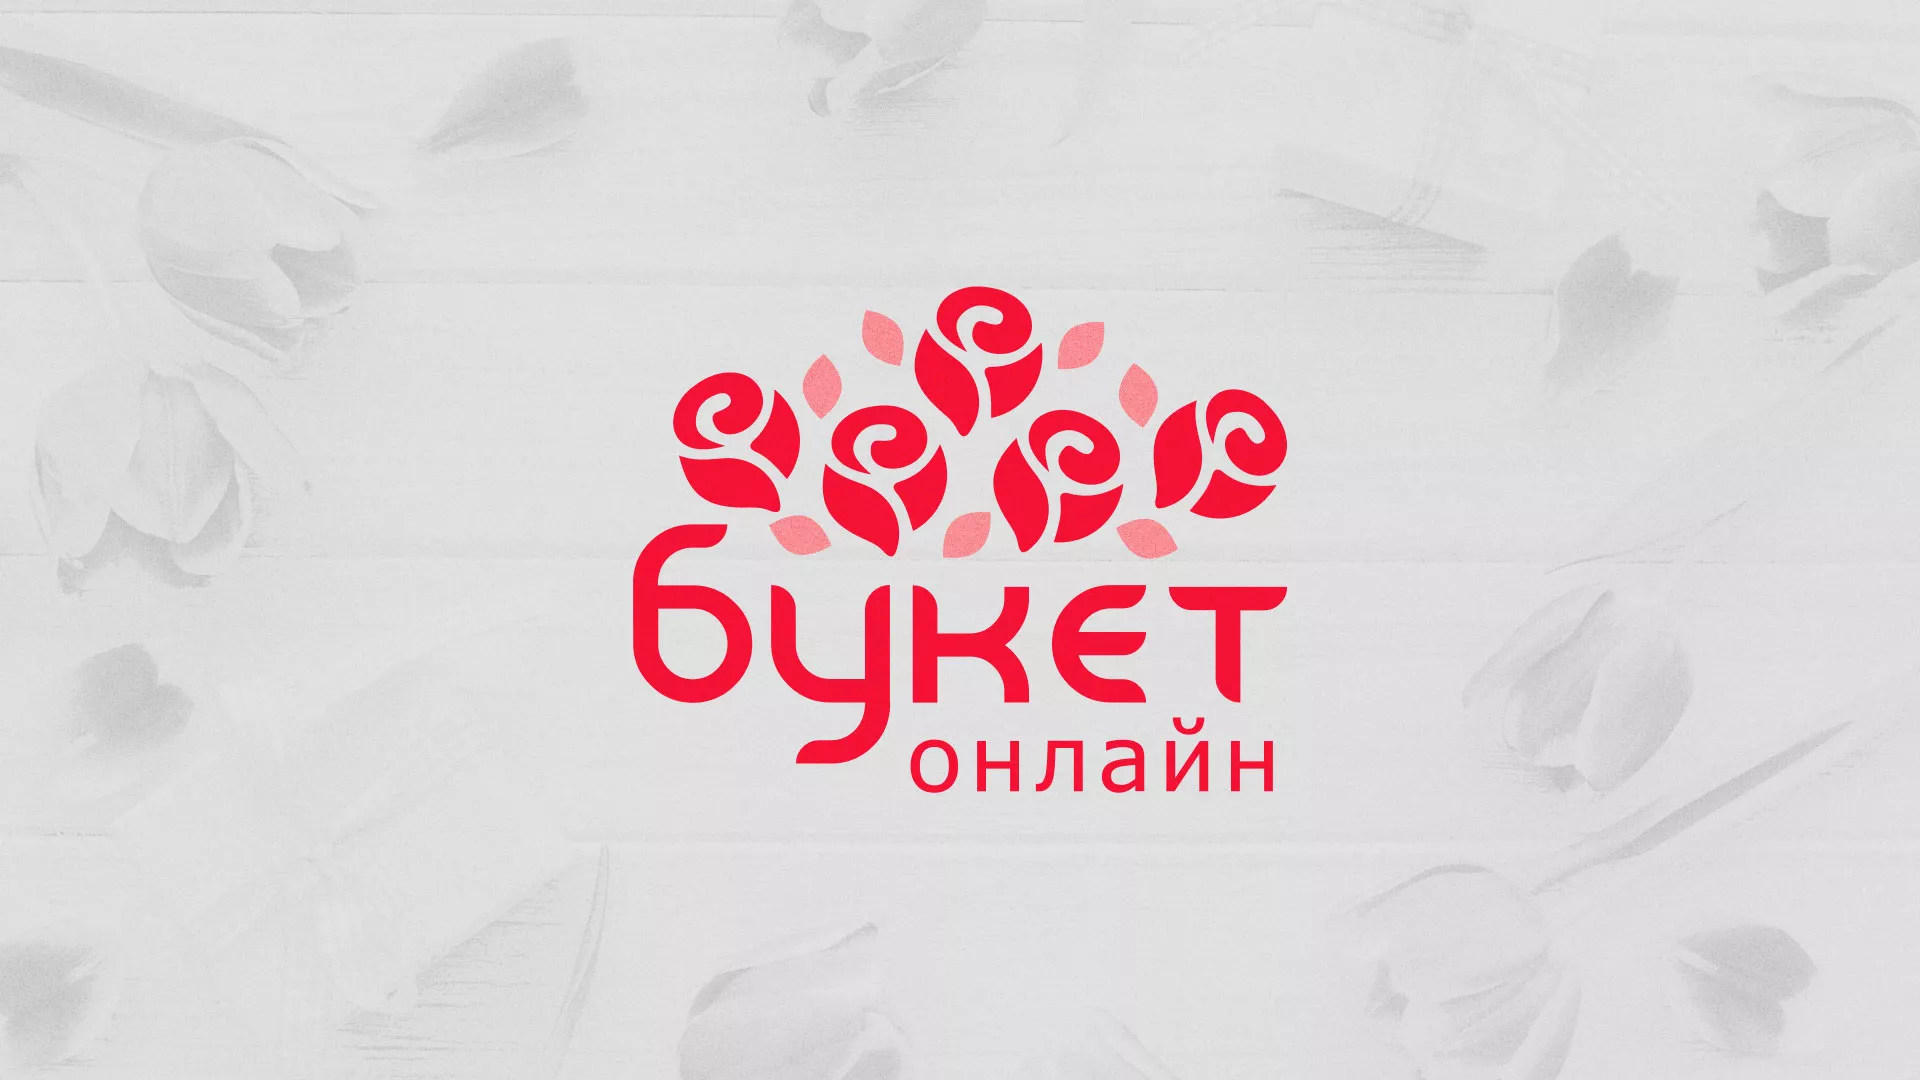 Создание интернет-магазина «Букет-онлайн» по цветам в Пскове